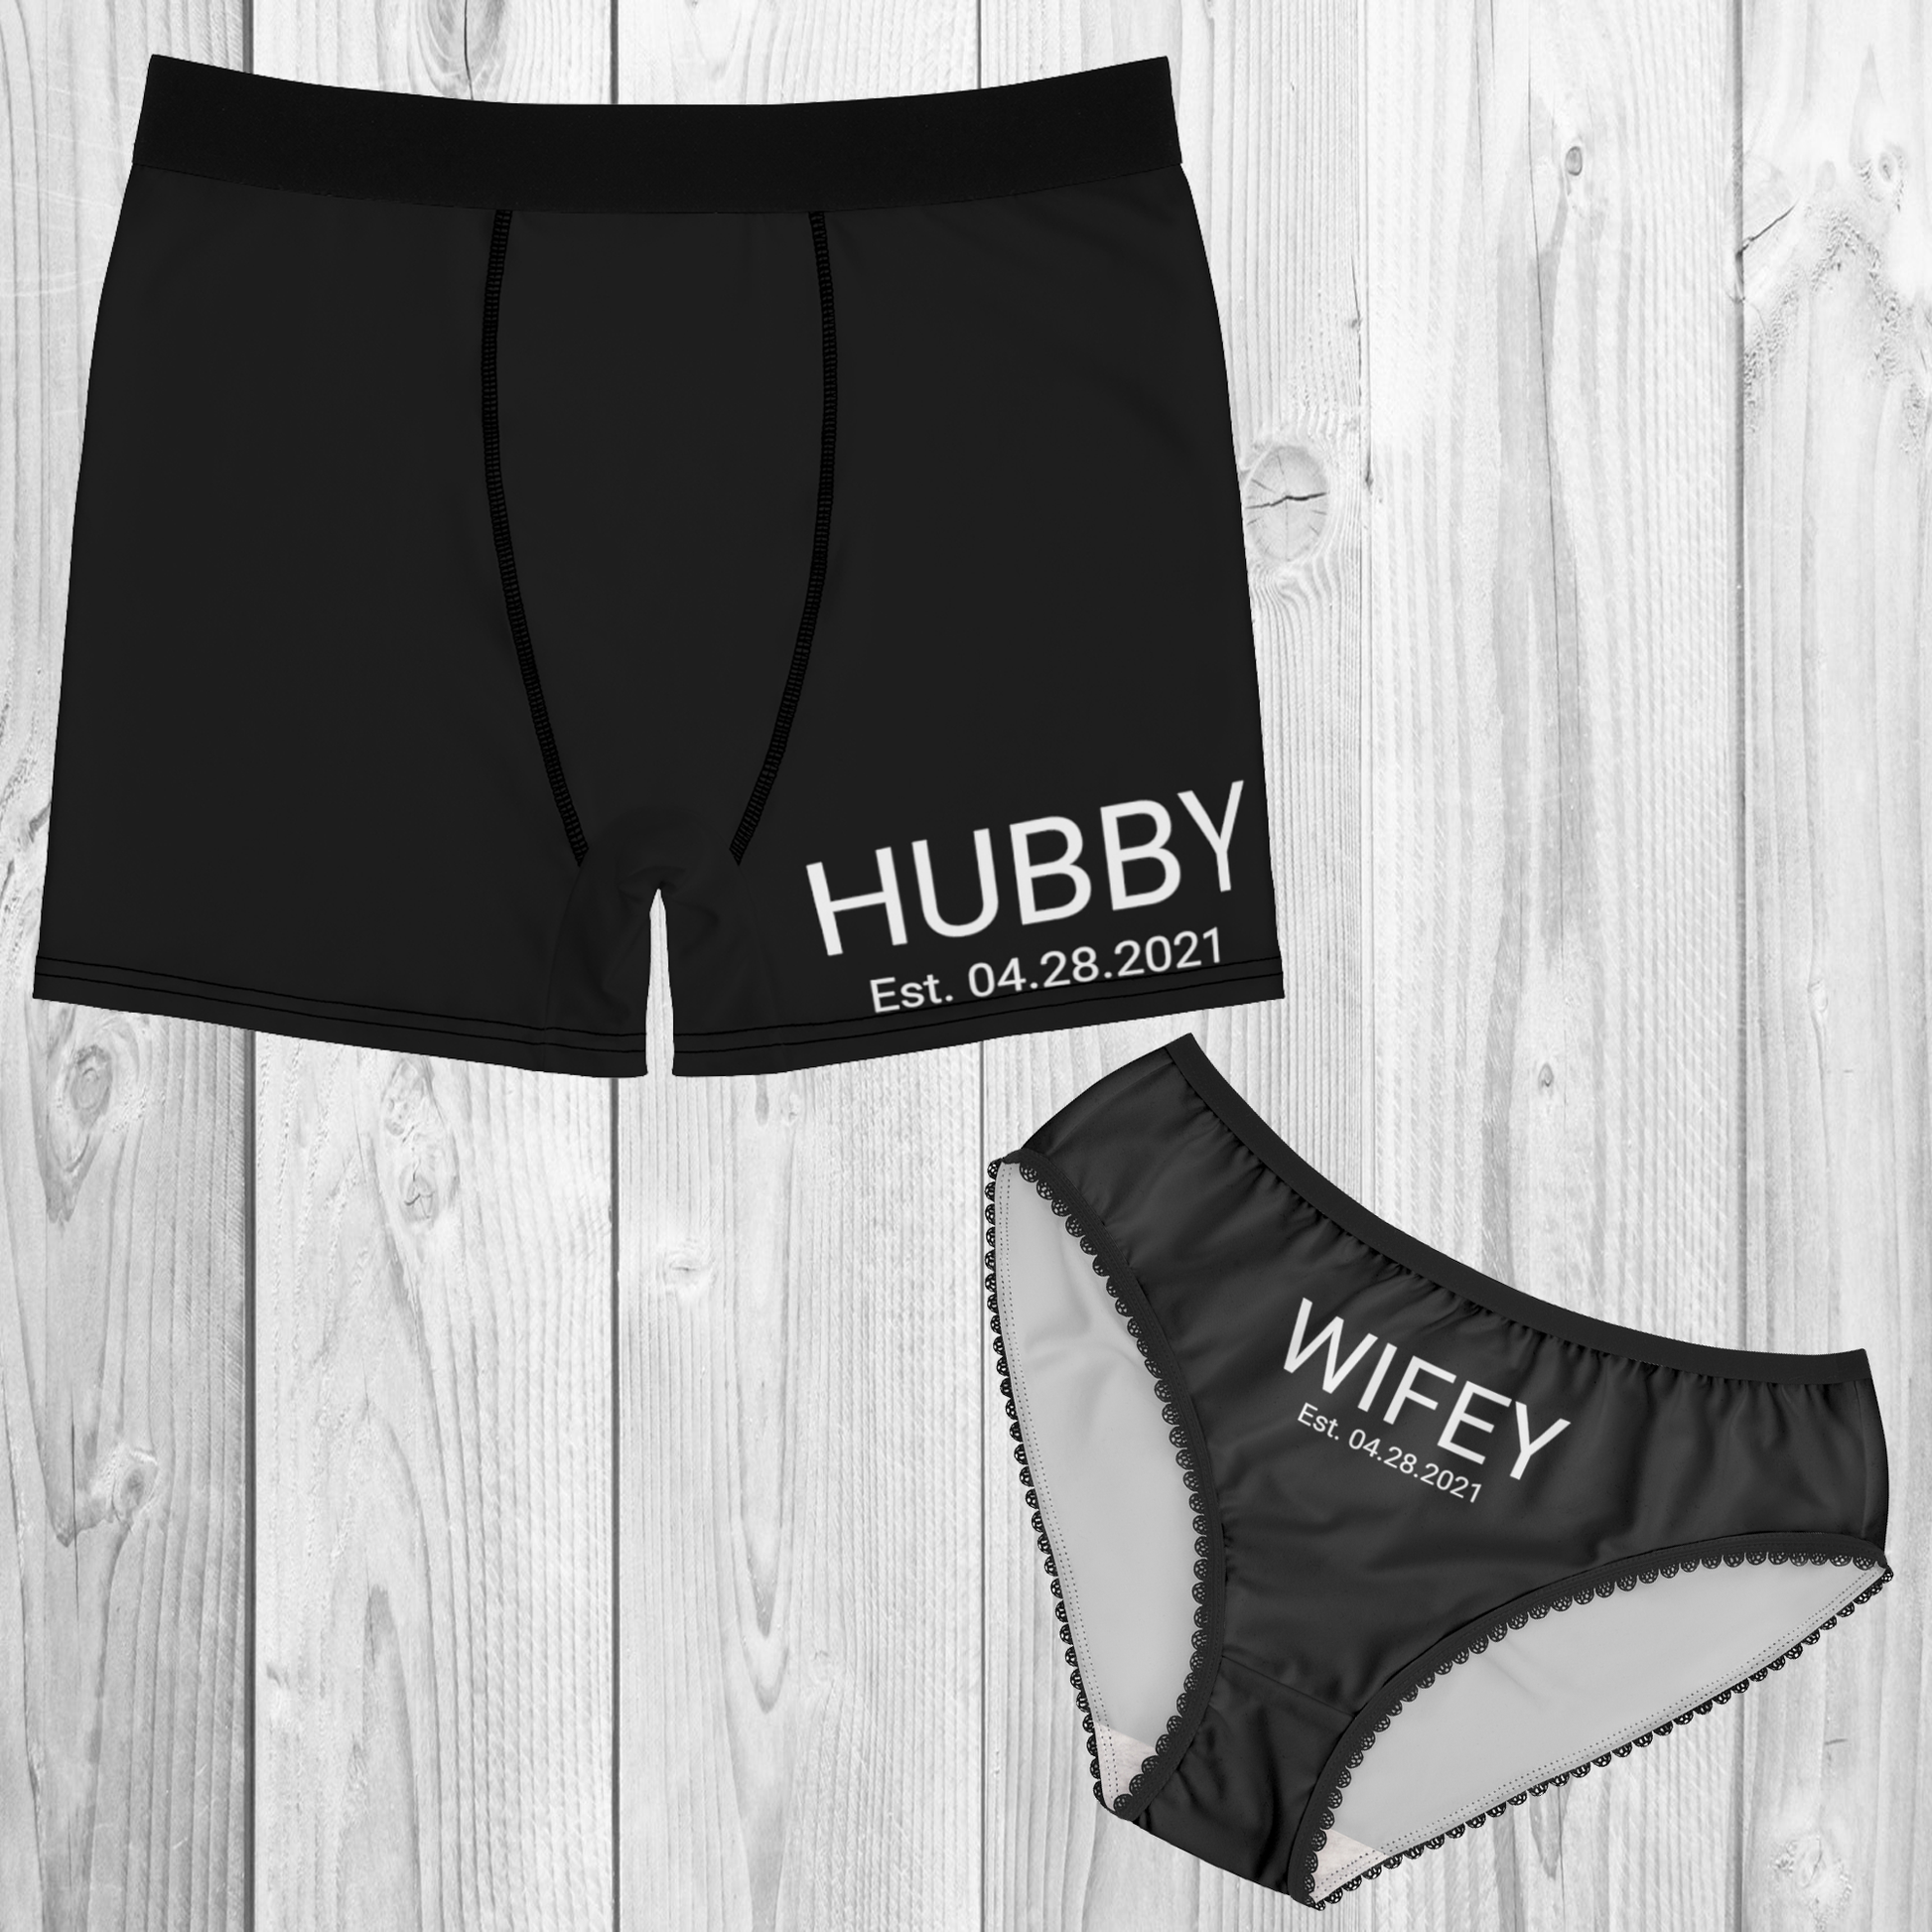 Hubby Men's Briefs, Underwear for the Groom